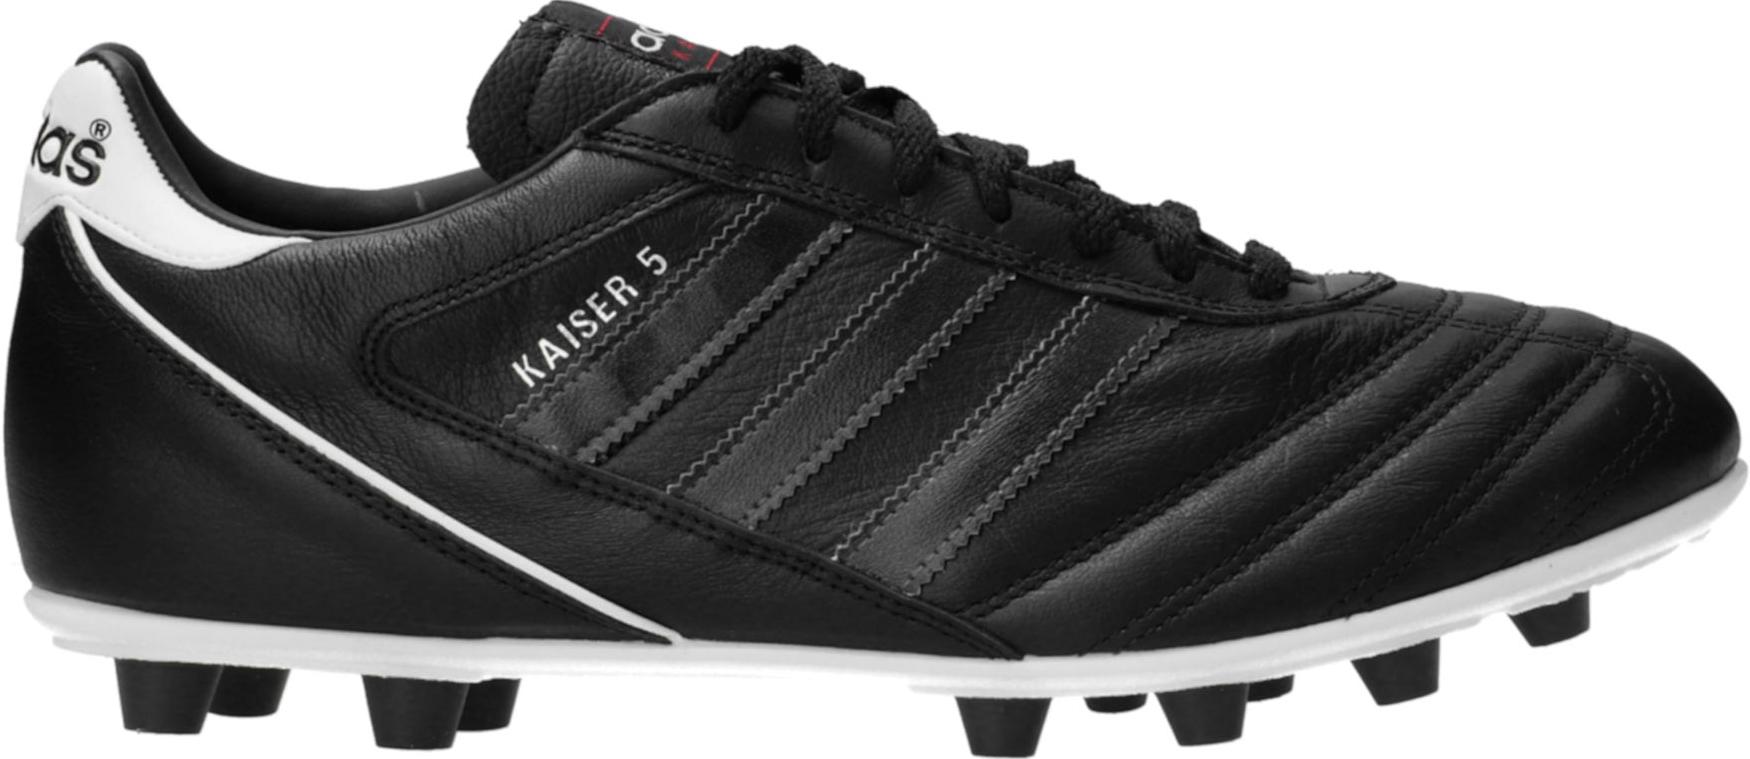 Botas de fútbol adidas Kaiser 5 Liga FG Black Stripes Schwarz